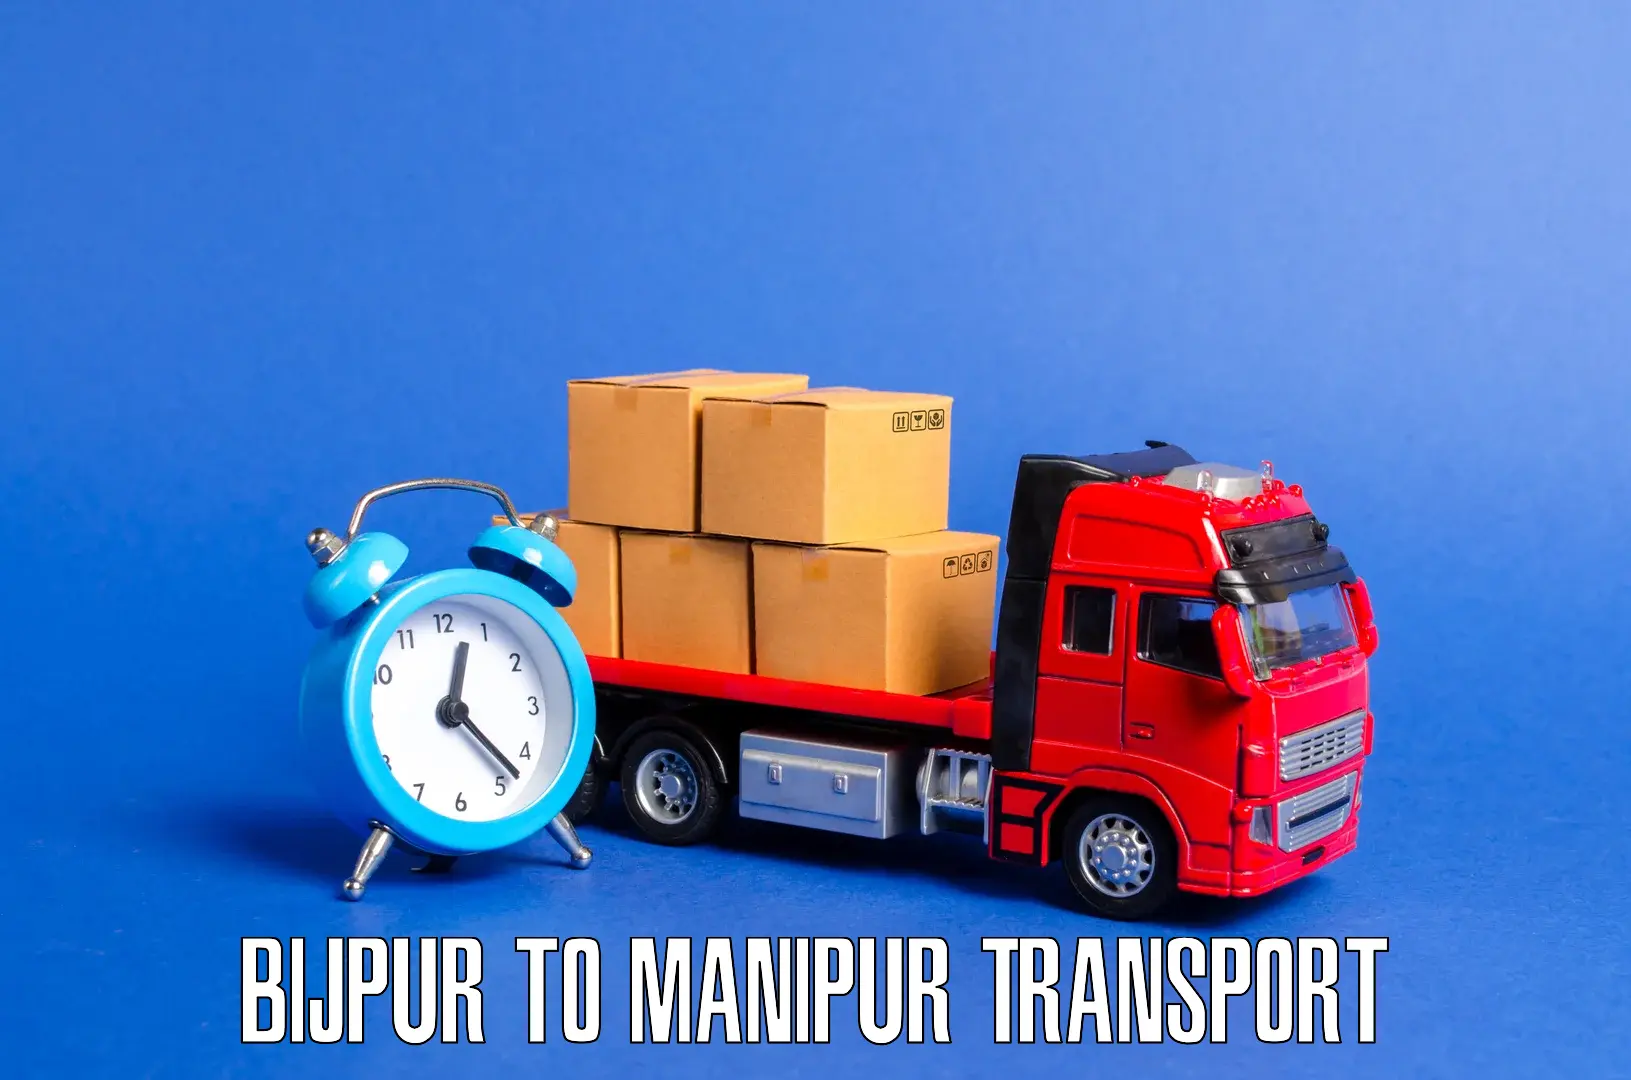 Nearby transport service in Bijpur to Churachandpur